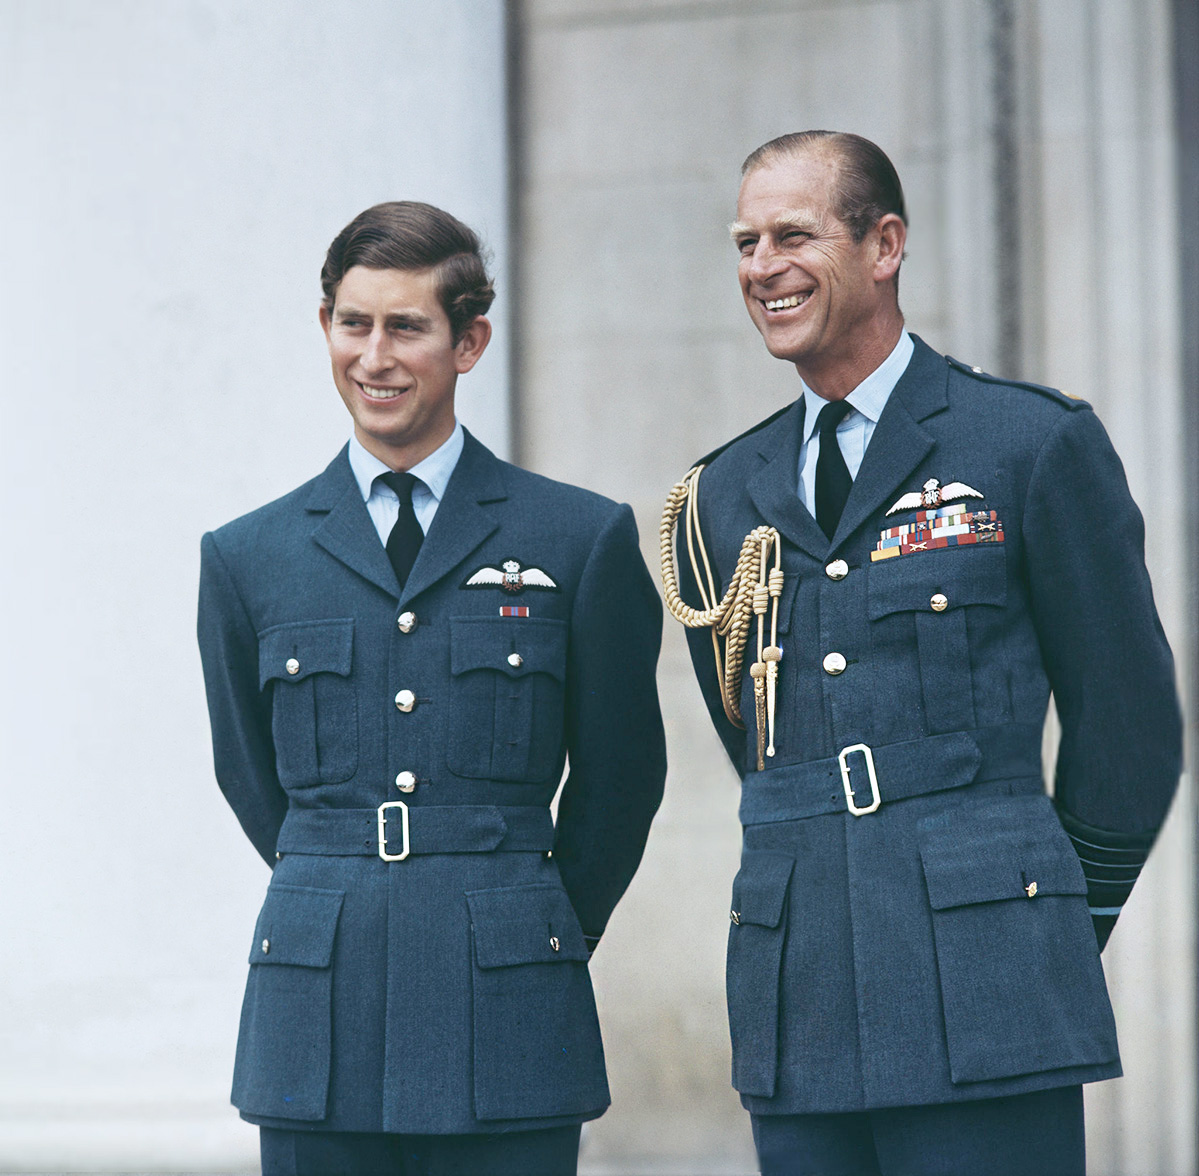 Amol_Radzhan_izvinilsya_pered_korolevskoy_semyoy_03_Mainstyle.jpgПринц Чарльз, принц Уэльский, получает свои крылья в RAF Cranwell в Линкольншире, Великобритания, 20 августа 1971 года